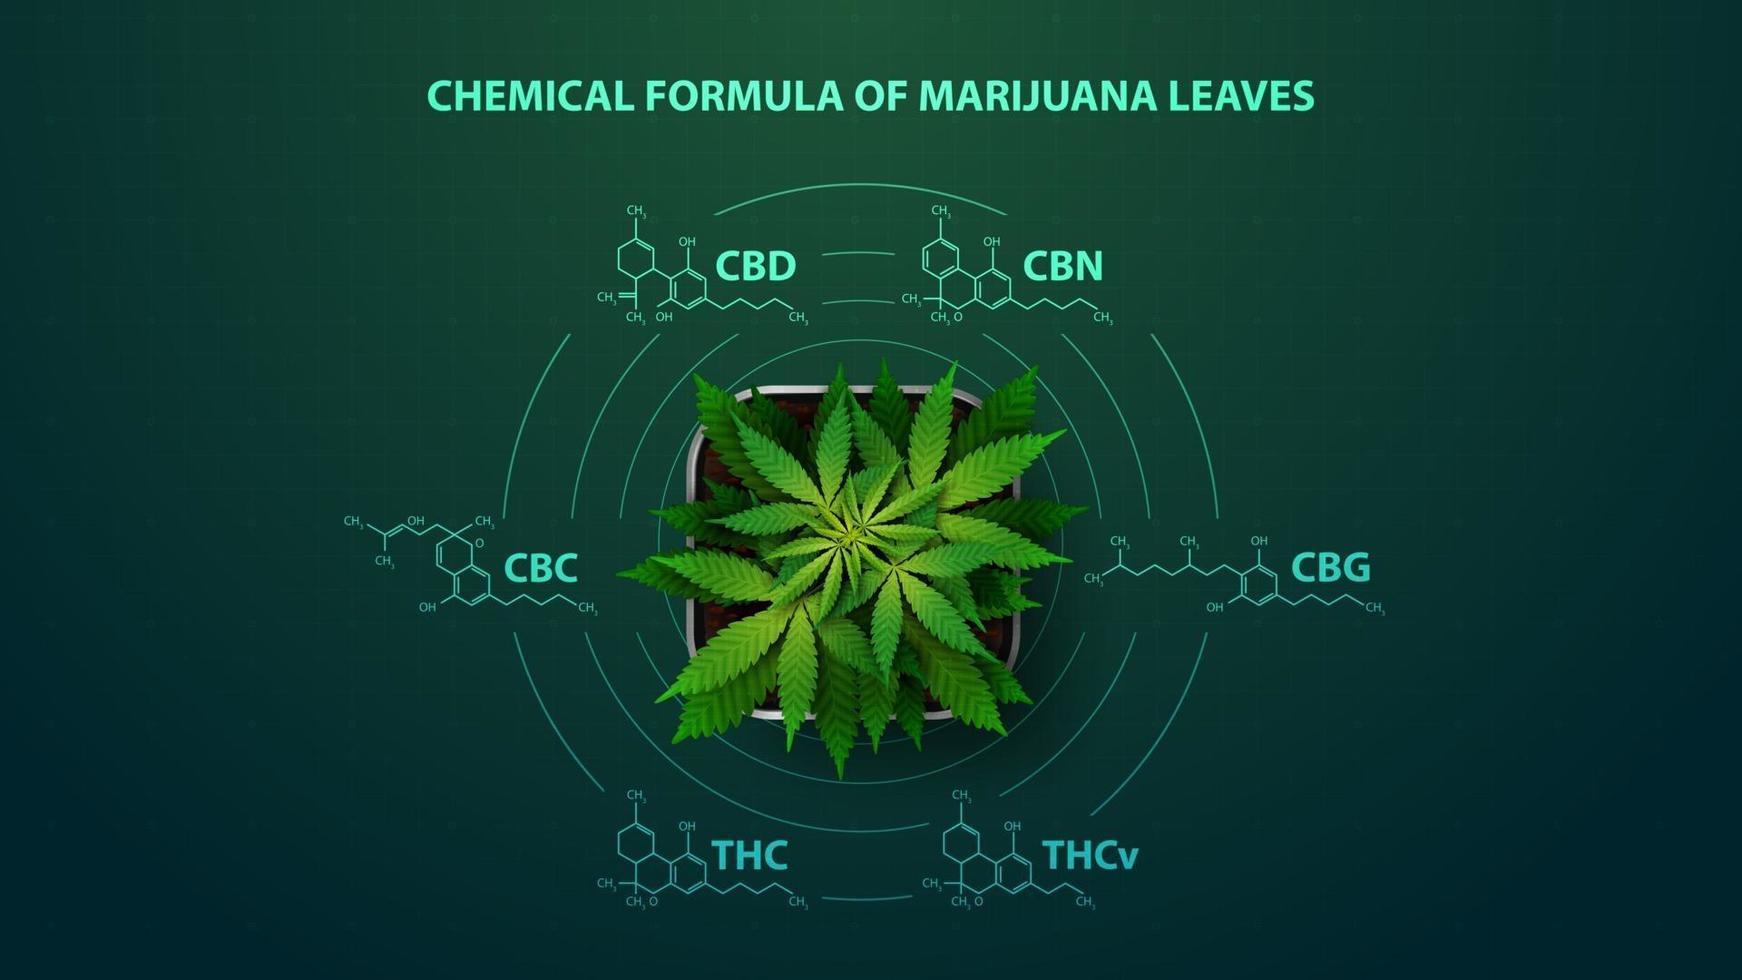 grünes Plakat mit chemischen Formeln der natürlichen Cannabinoide. Cannabispflanze mit Infografik chemischer Formeln von Cannabinoiden im digitalen Stil vektor